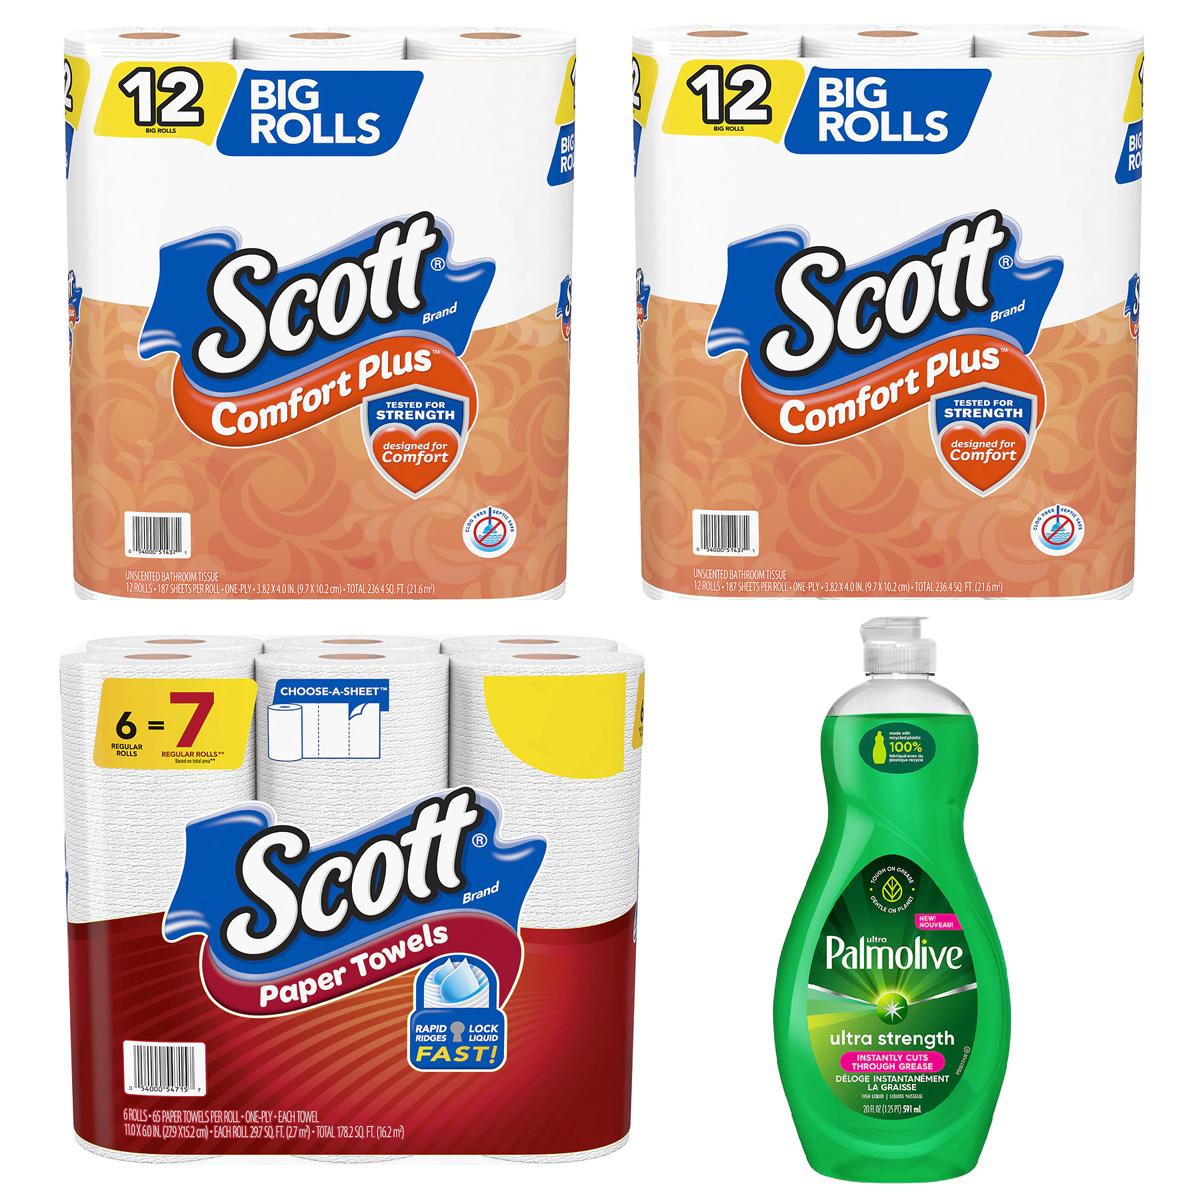 24 Scott Toilet Paper + 6 Paper Towels + Palmolive Dish Soap for $10.69